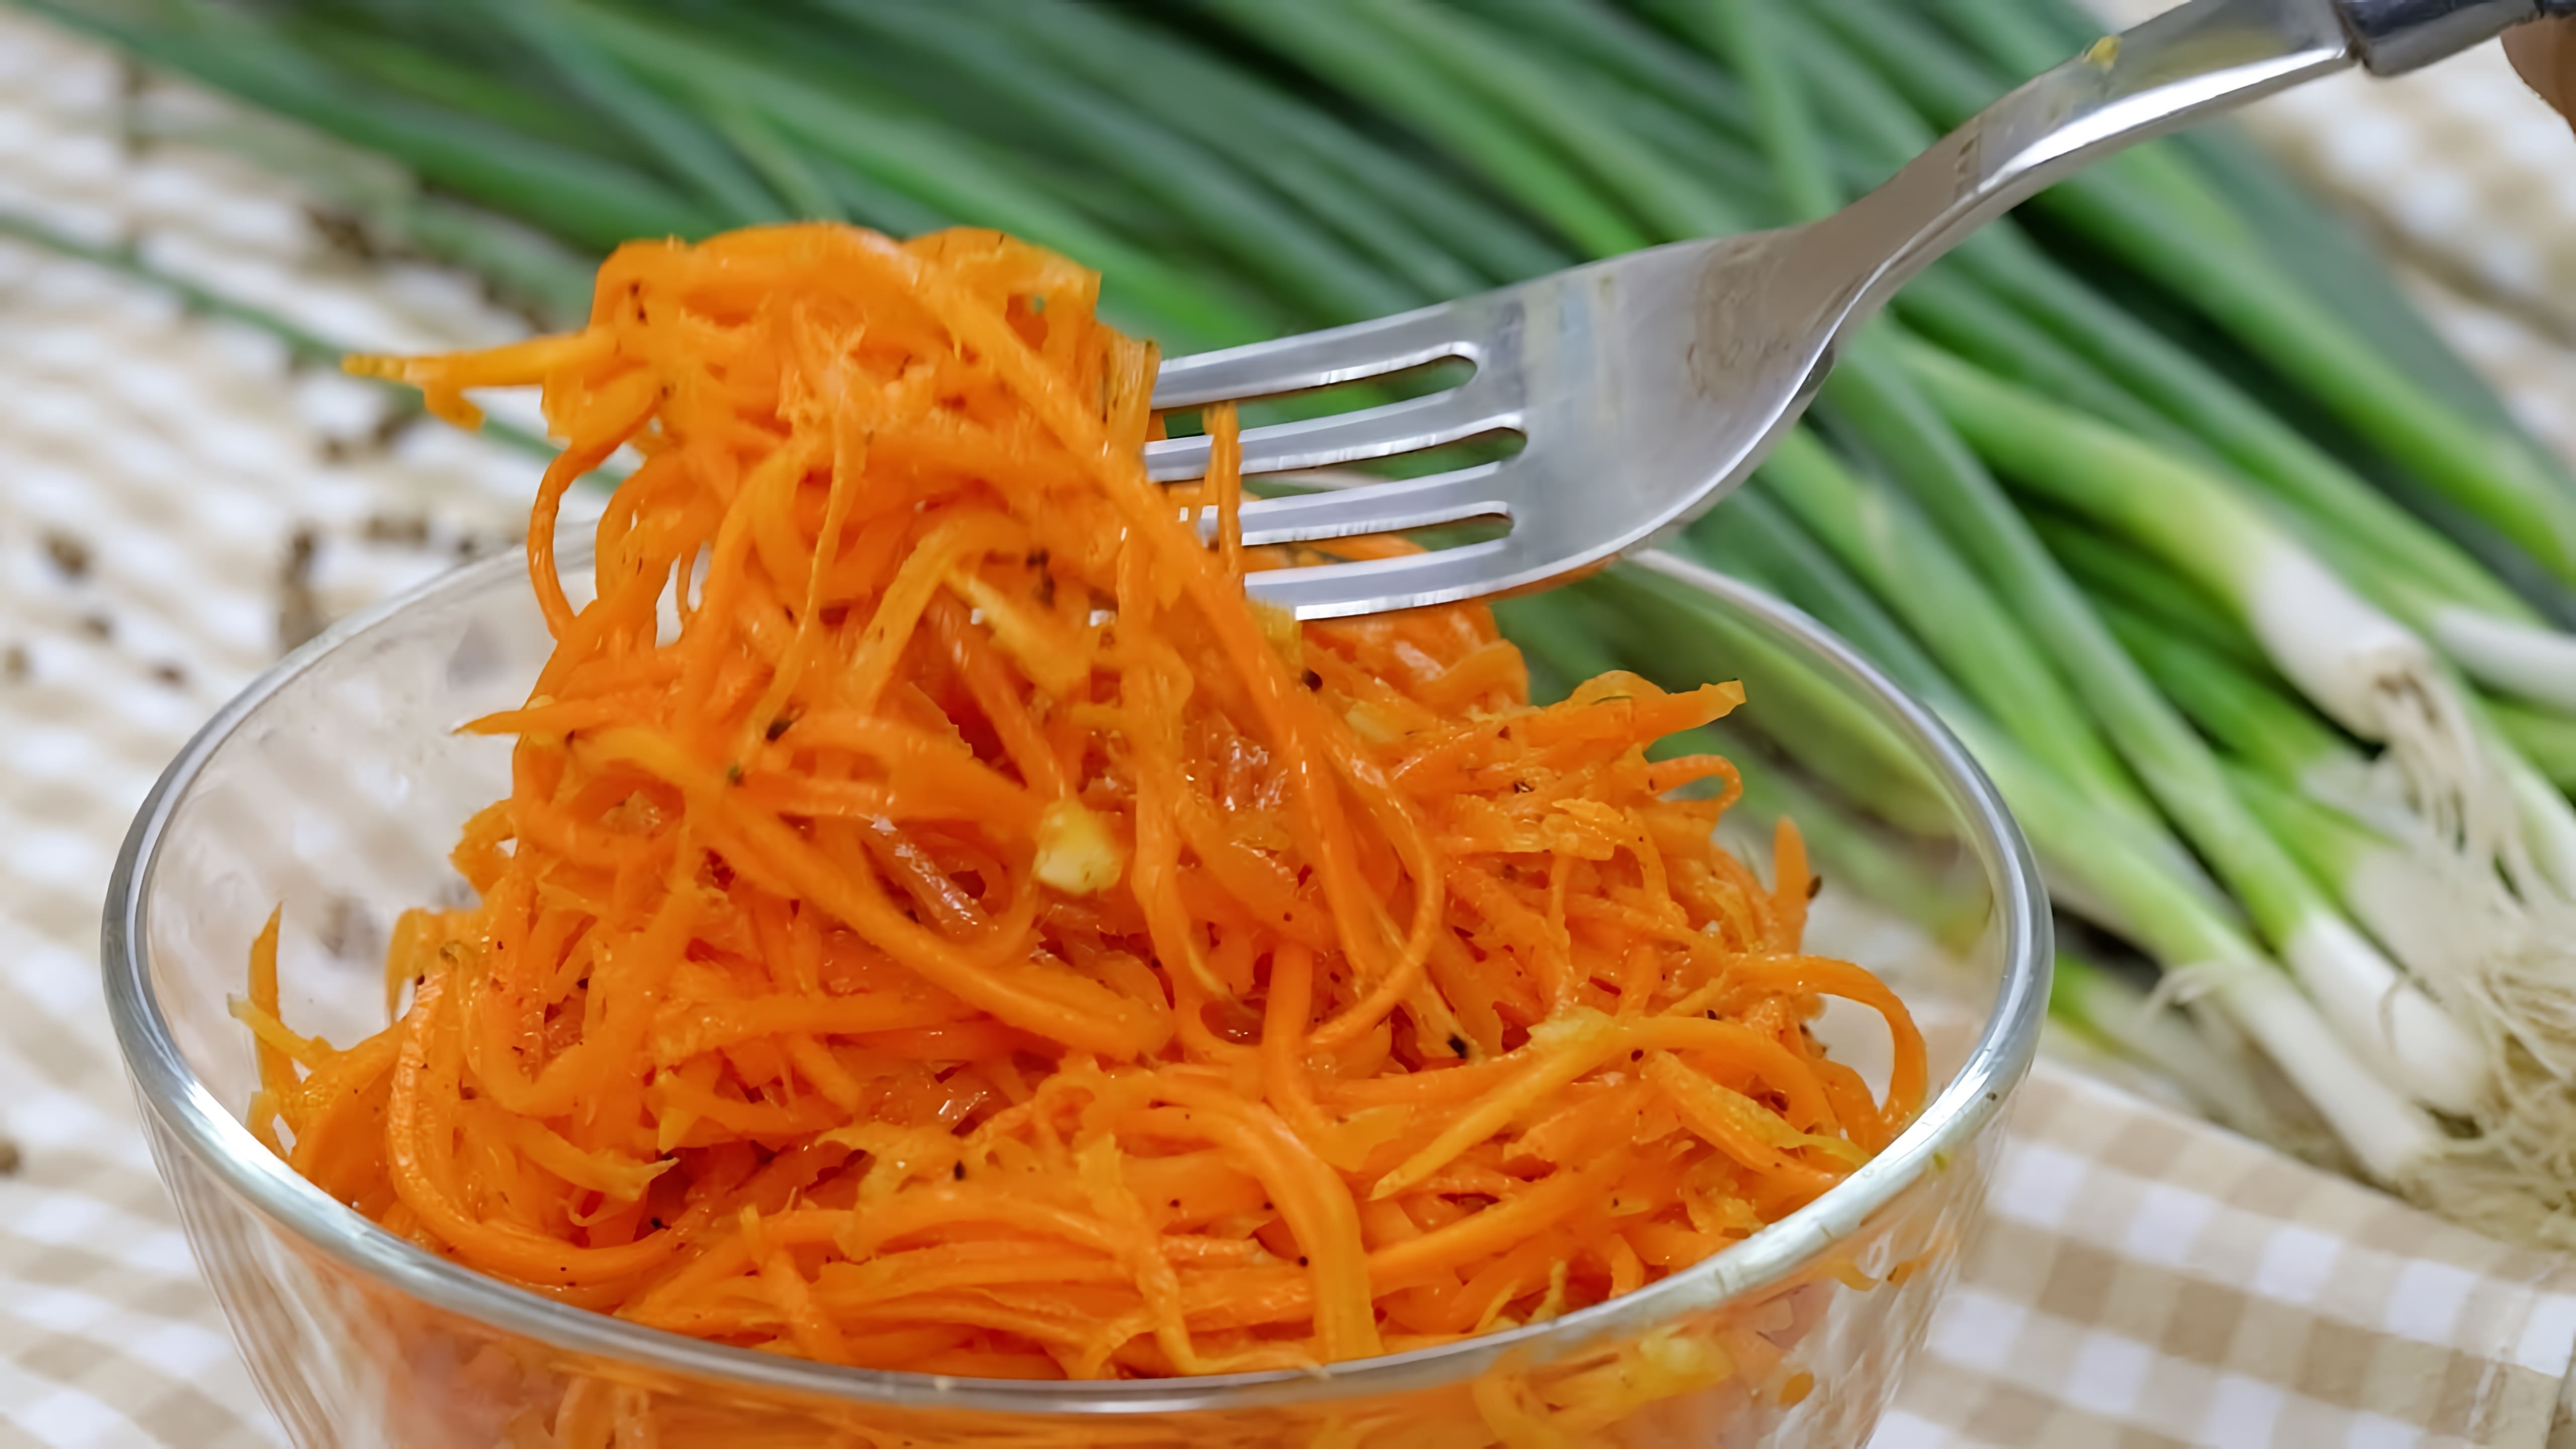 В этом видео девушка делится своим любимым рецептом моркови по-корейски